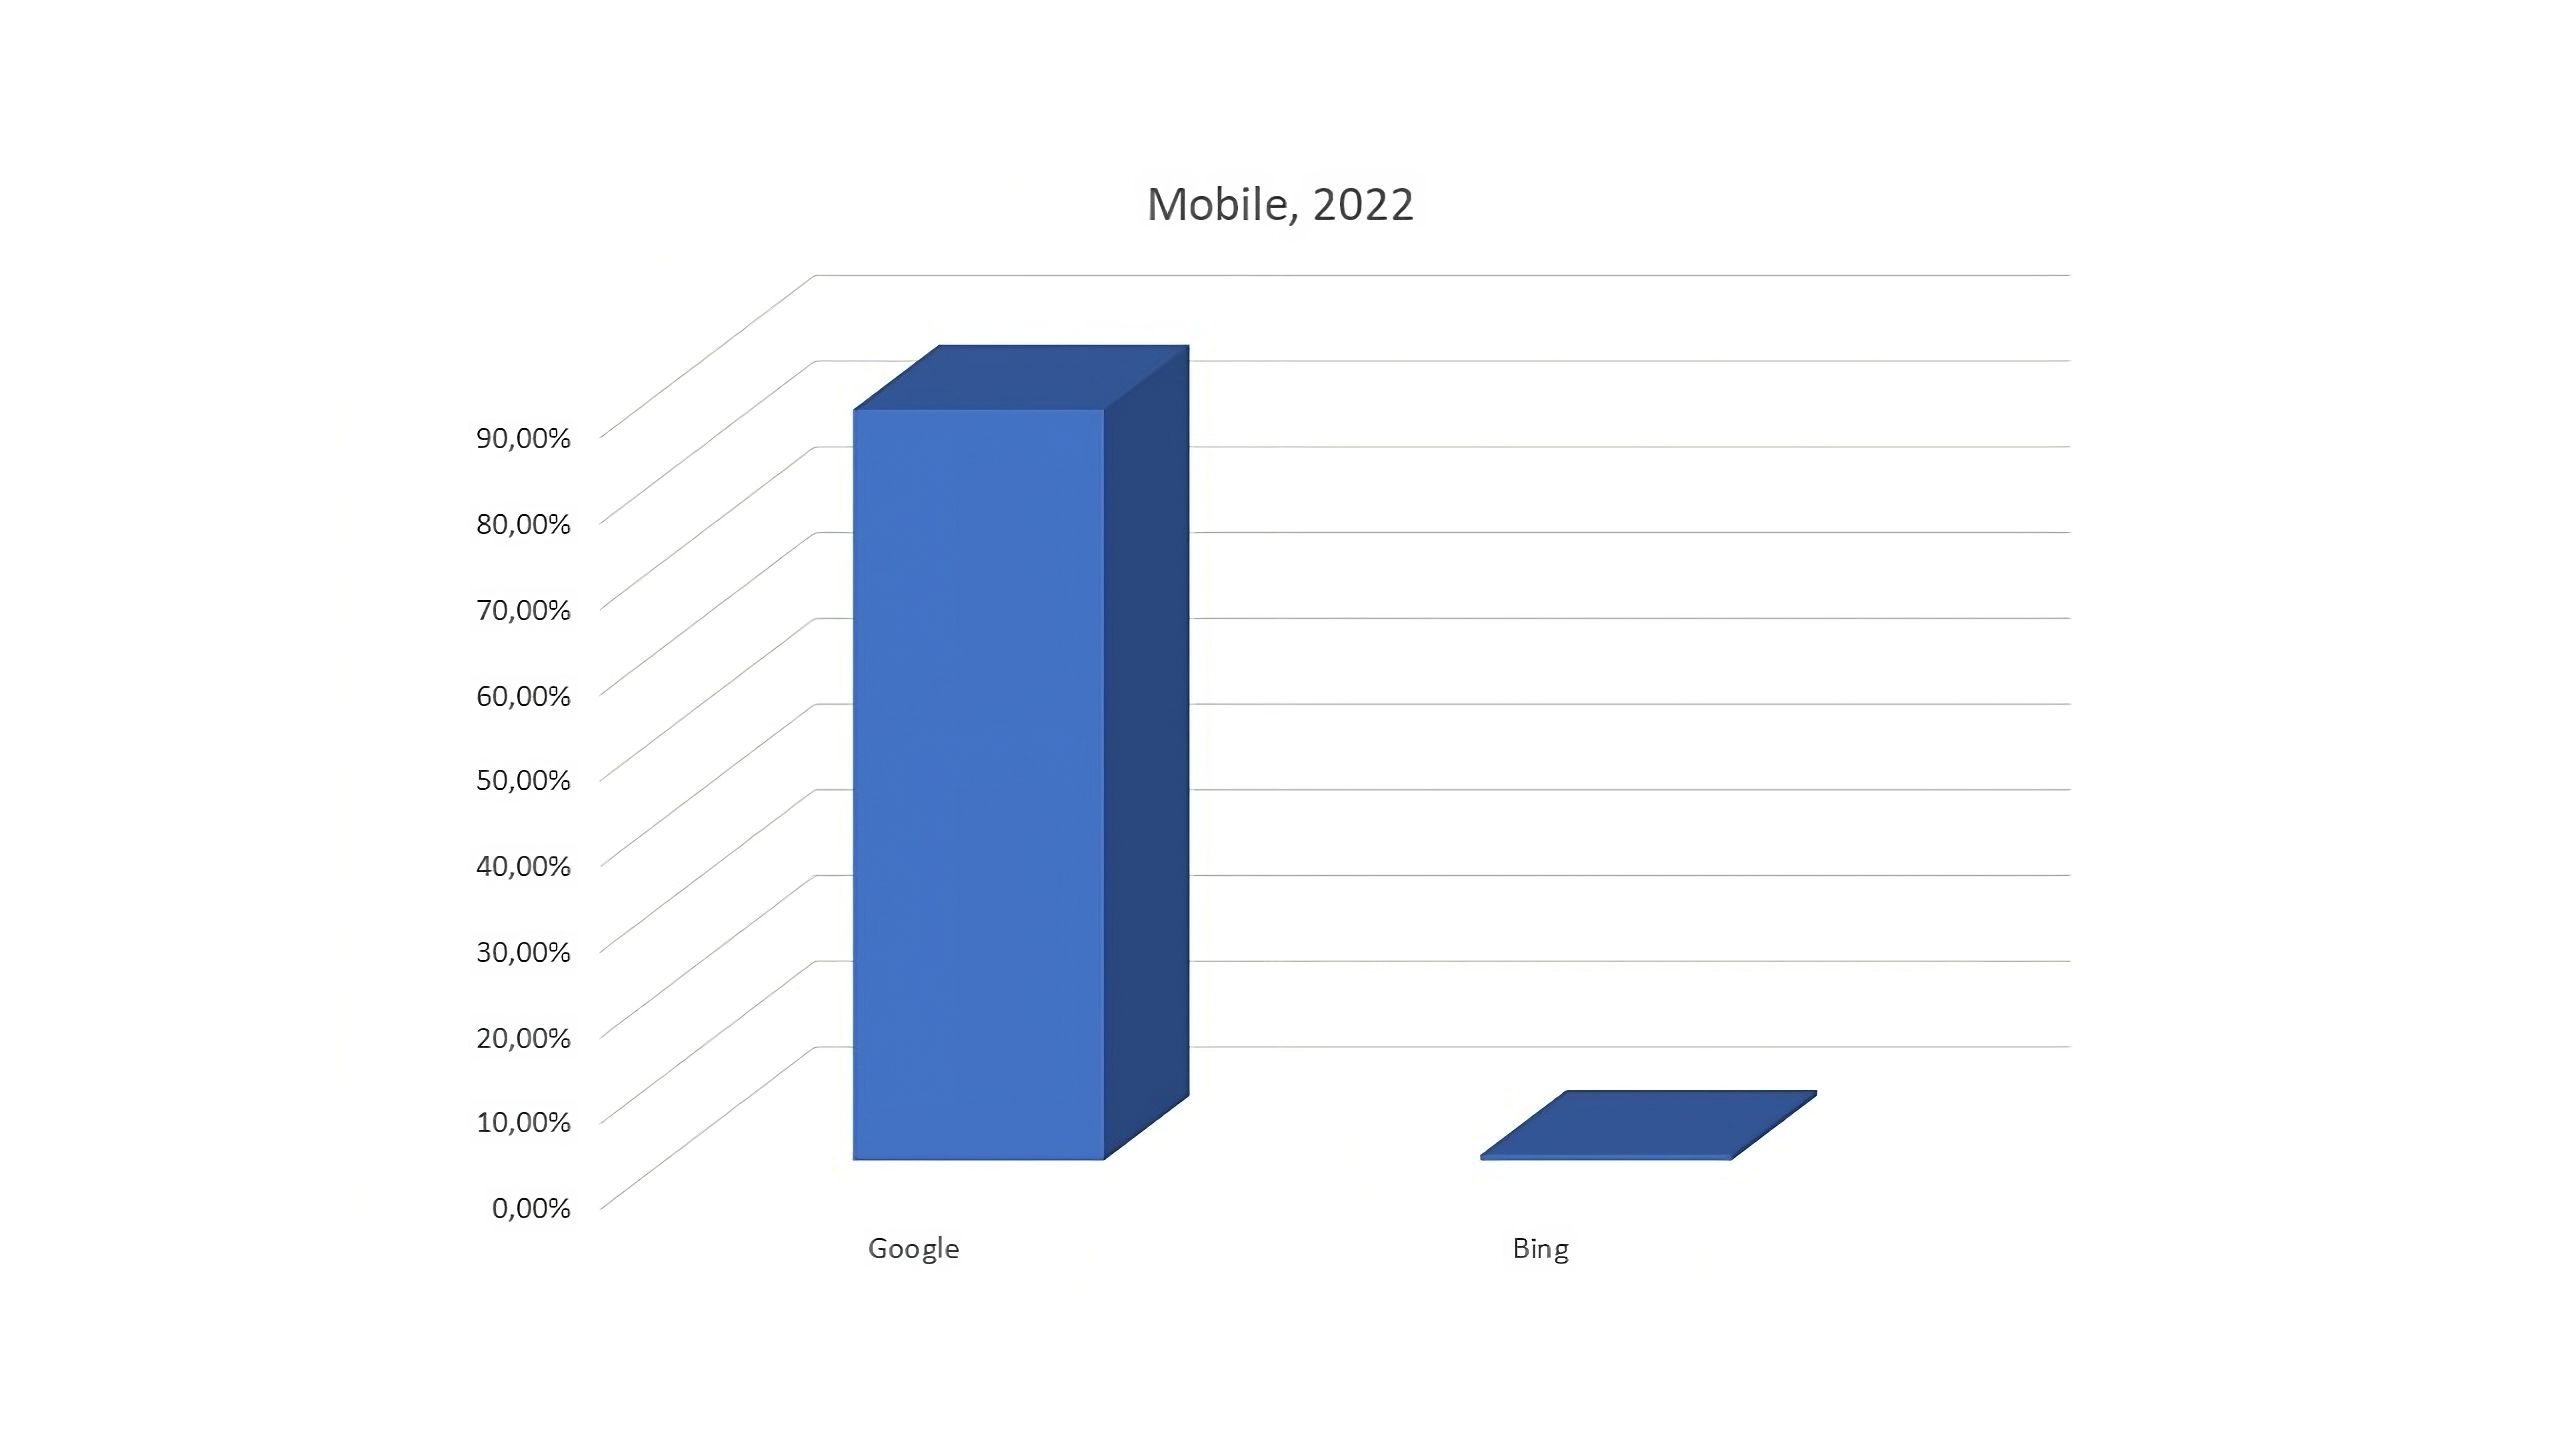 Balkendiagramm mit Marktanteilen von Google und Bing im Bereich Mobile Suche für das Jahr 2022, wobei Google deutlich führt.